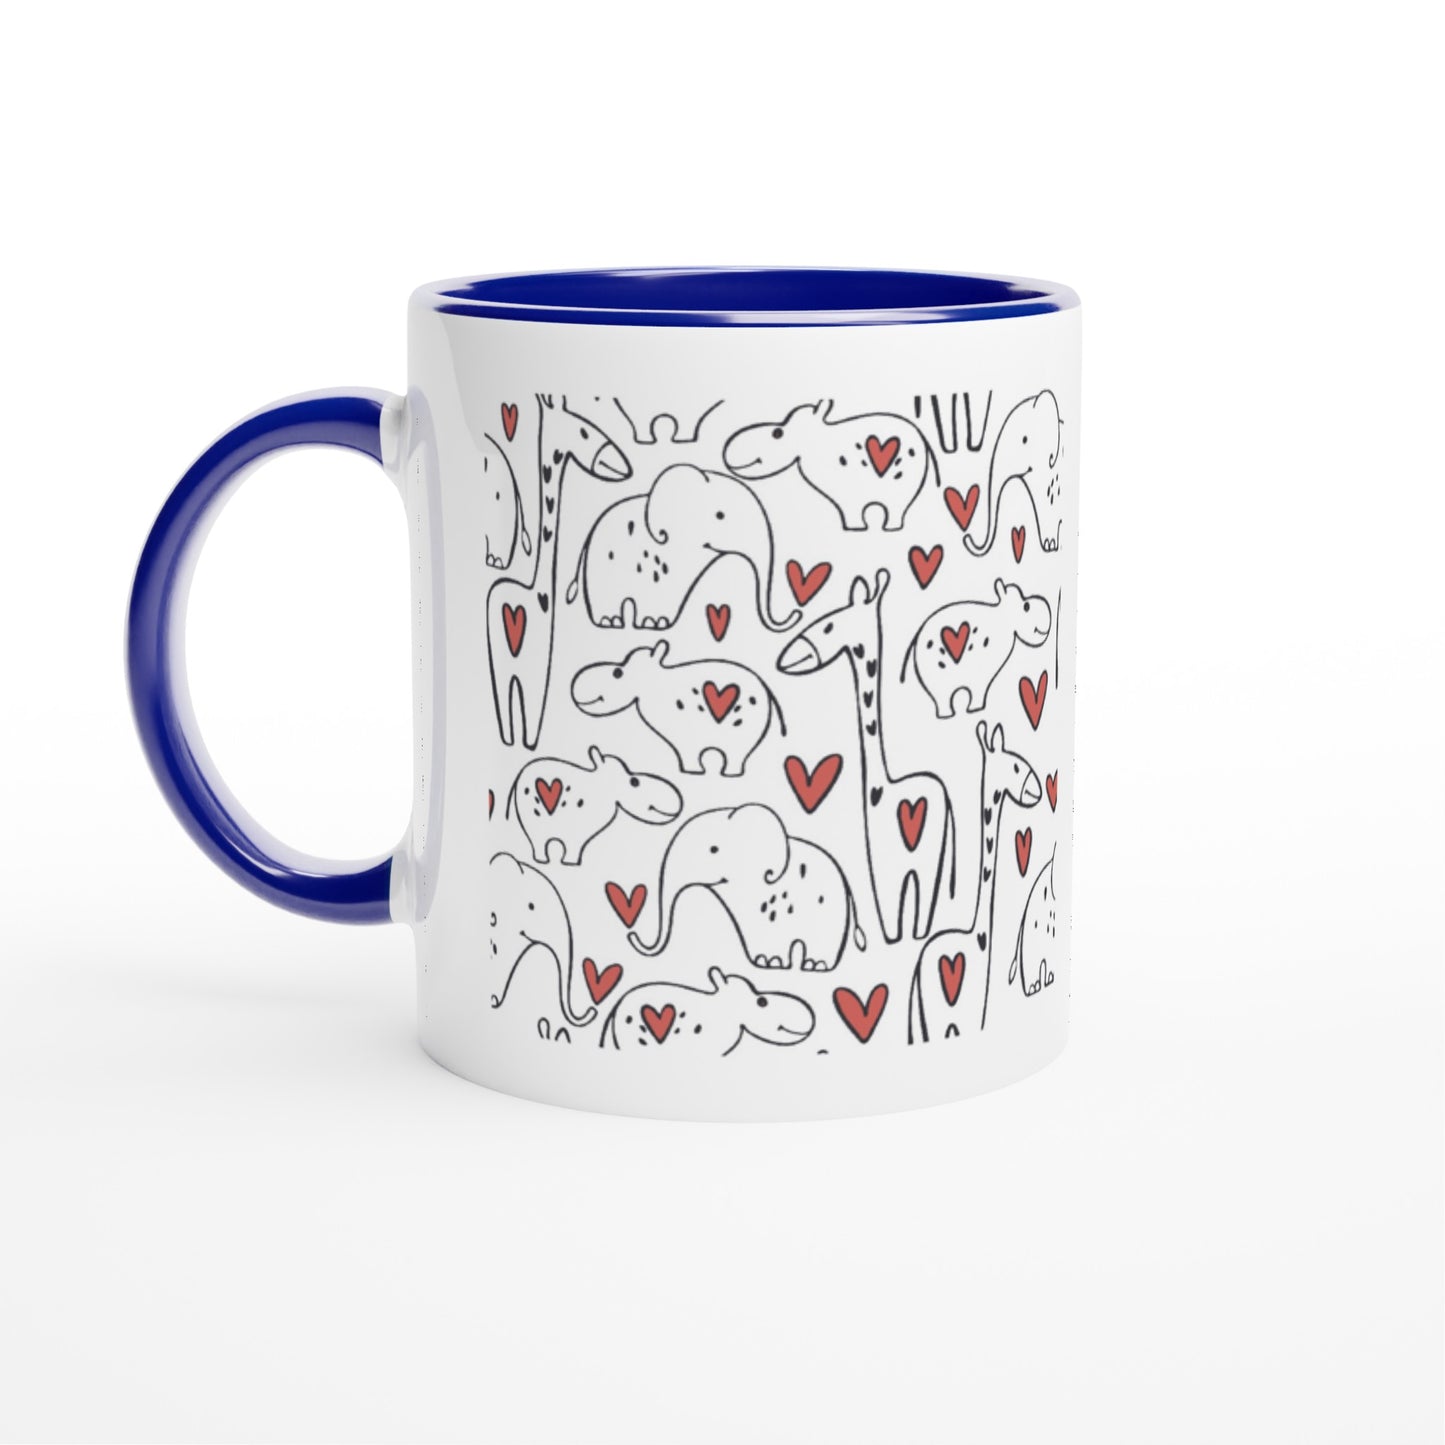 White 11oz Ceramic Mug with Color Inside "Wild love"